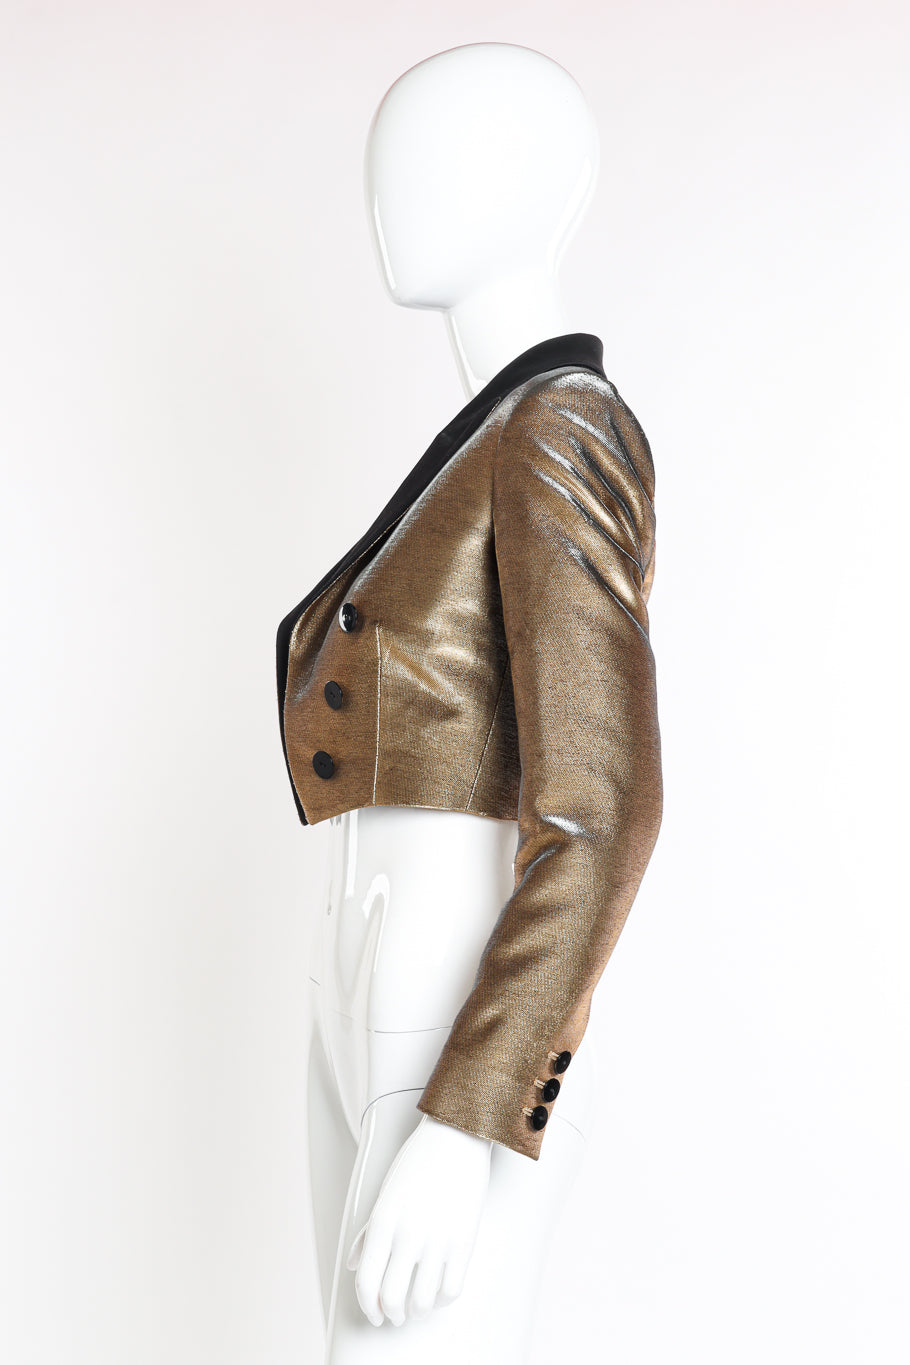 Jean Paul Gaultier Femme Cropped Lamé Tuxedo Jacket side on mannequin @recessla